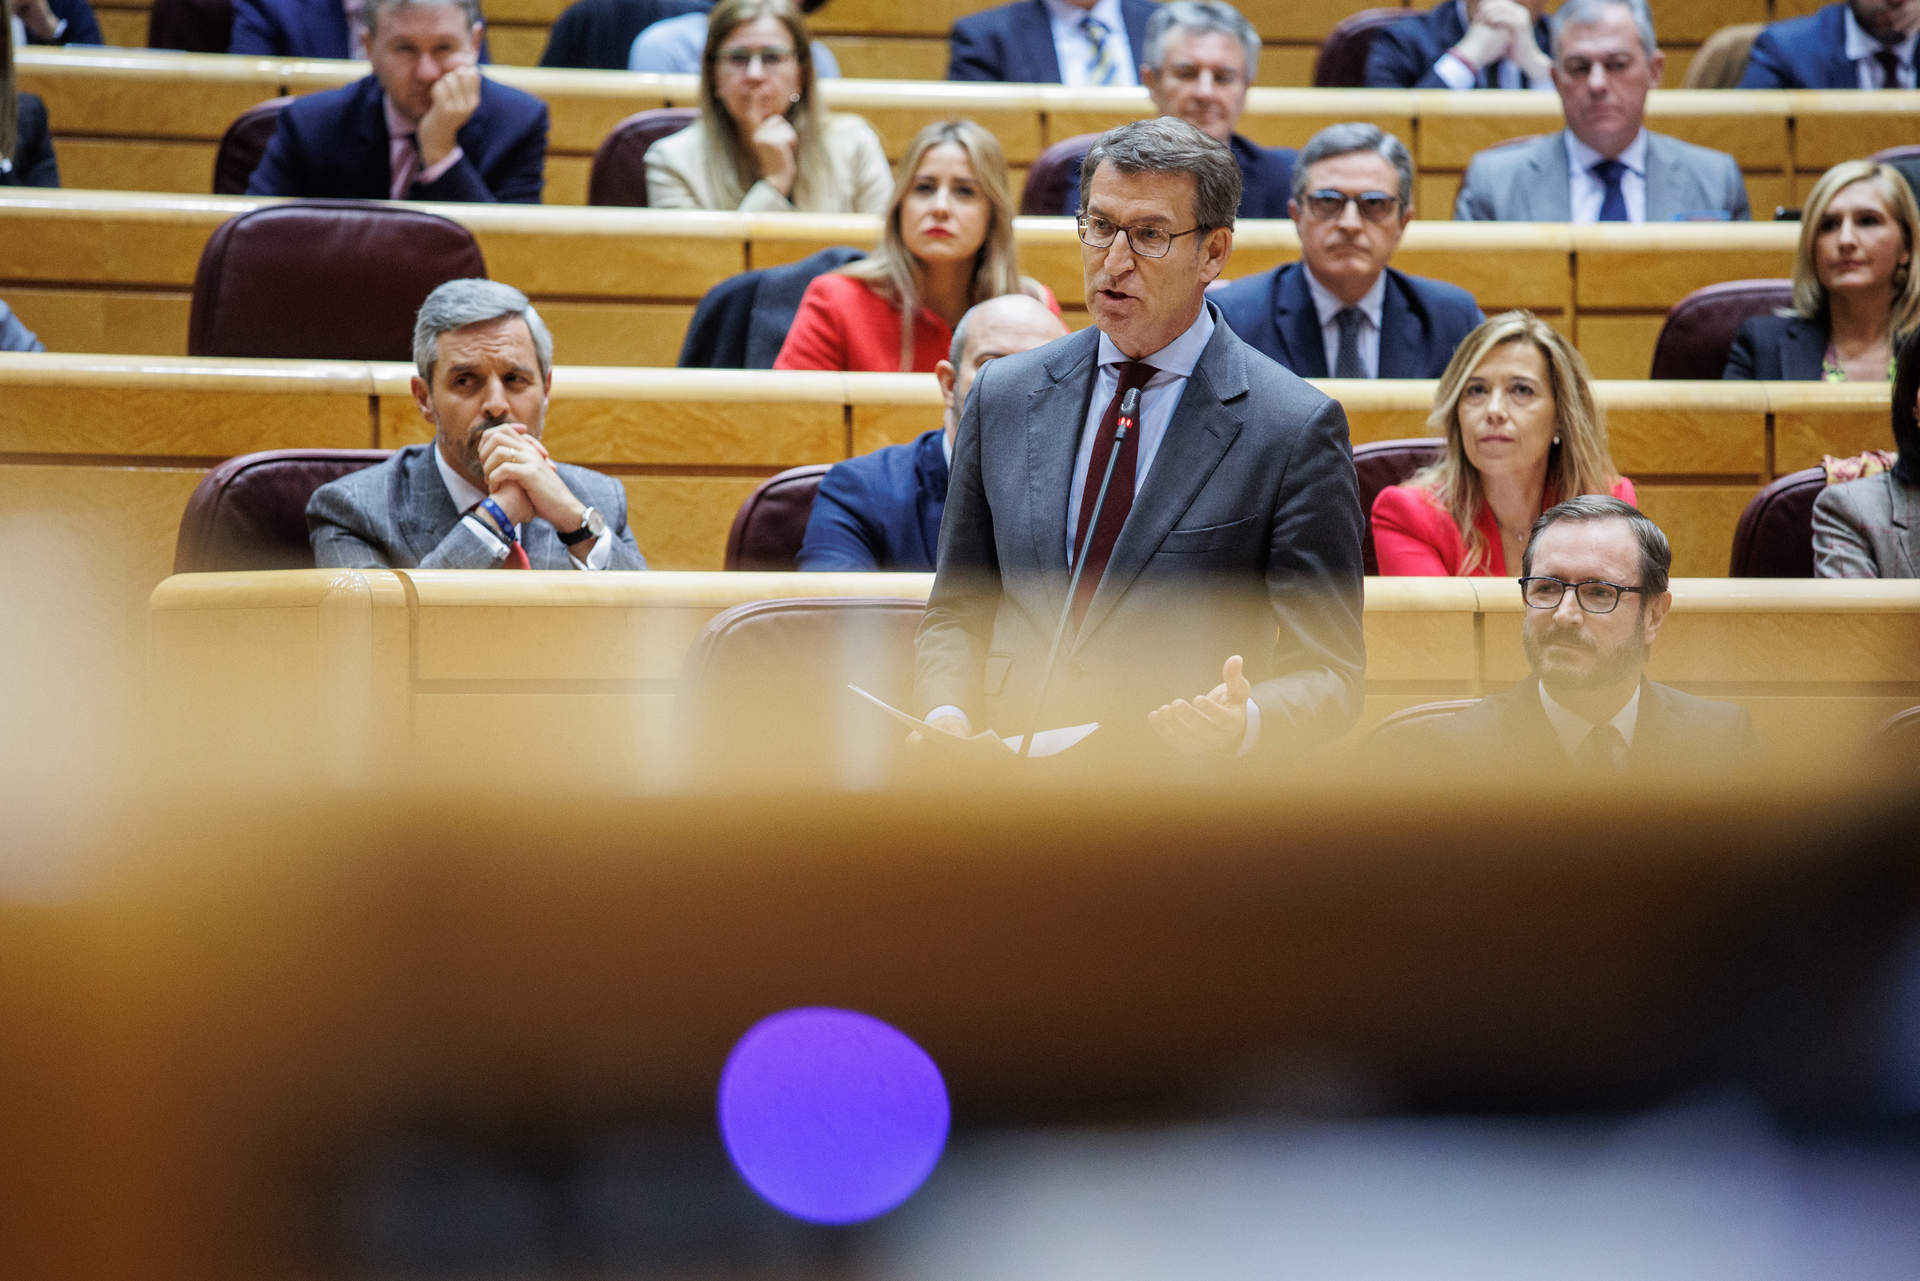 Cargar máis
El líder del Partido Popular, Alberto Núñez Feijóo, interviene durante una sesión de control al Gobierno en el Senado, a 22 de noviembre de 2022, en Madrid (España).